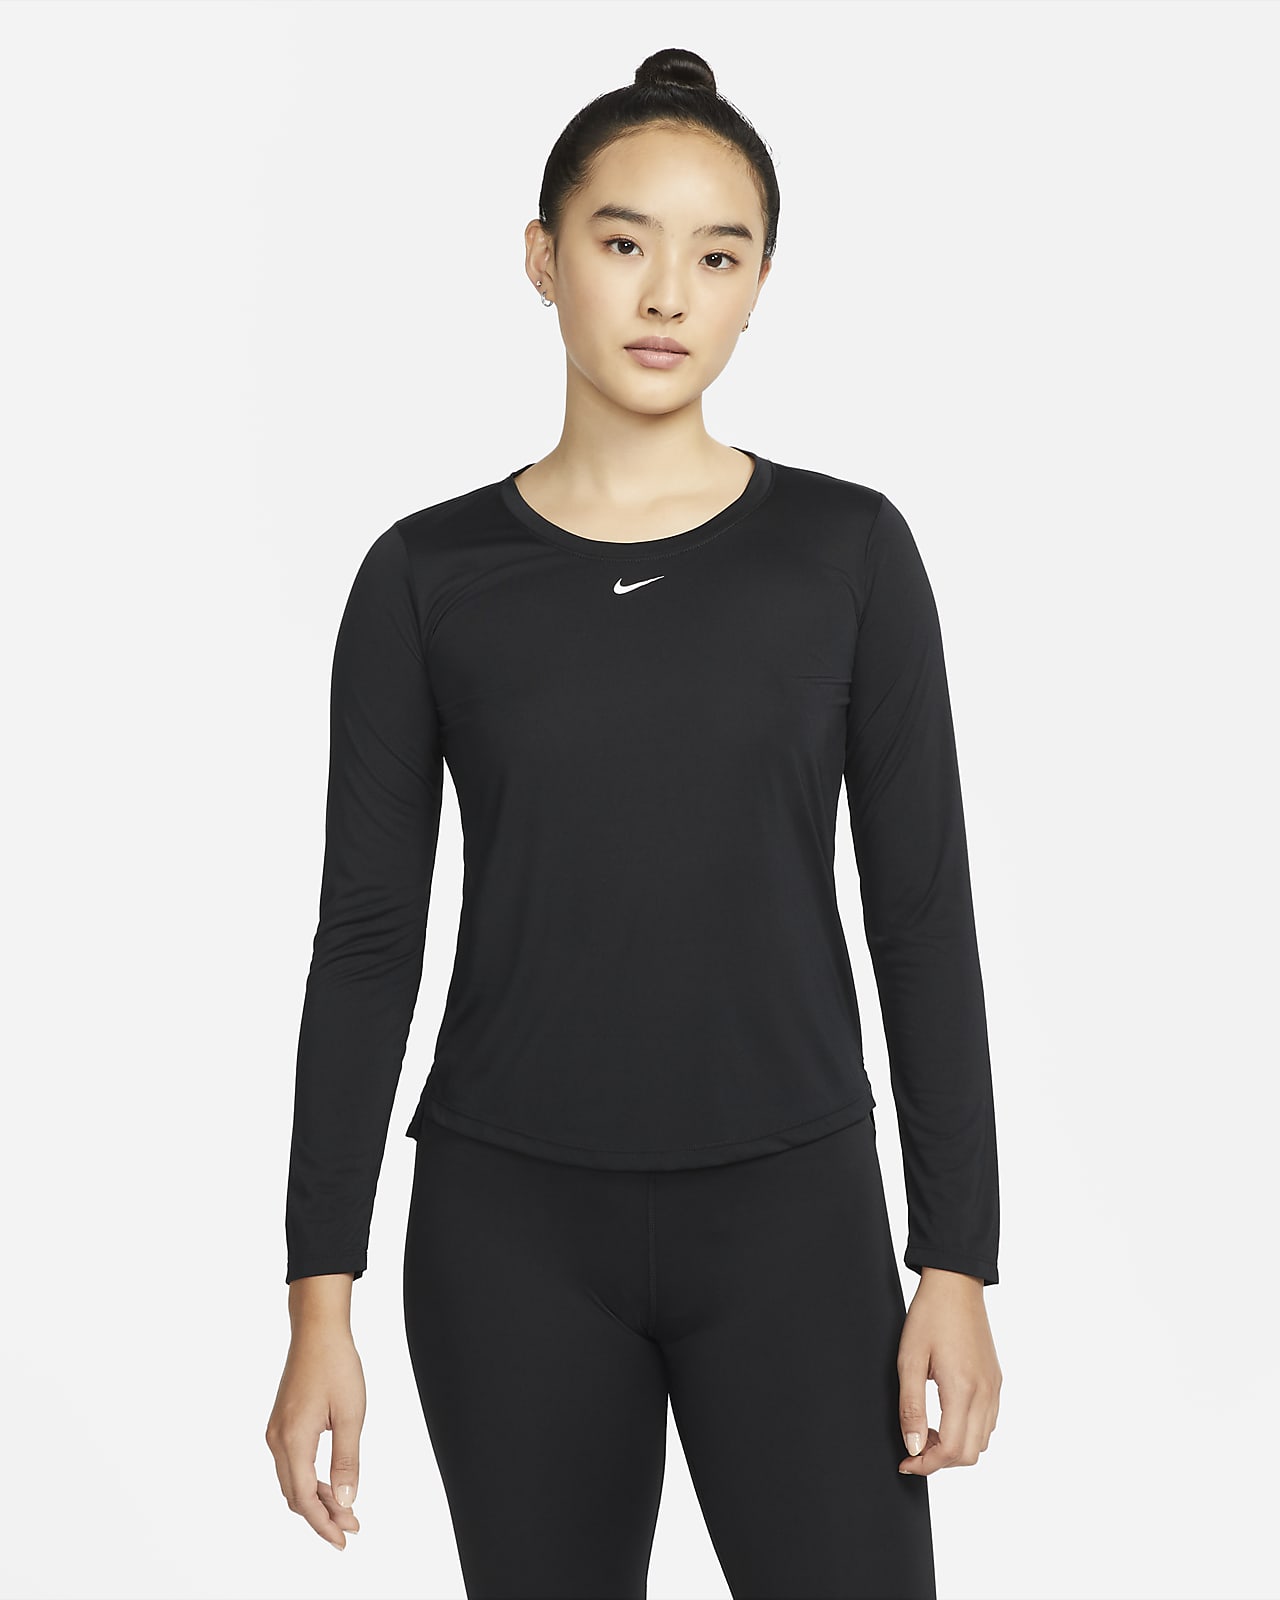 Nike Dri-FIT One 女款標準剪裁長袖上衣